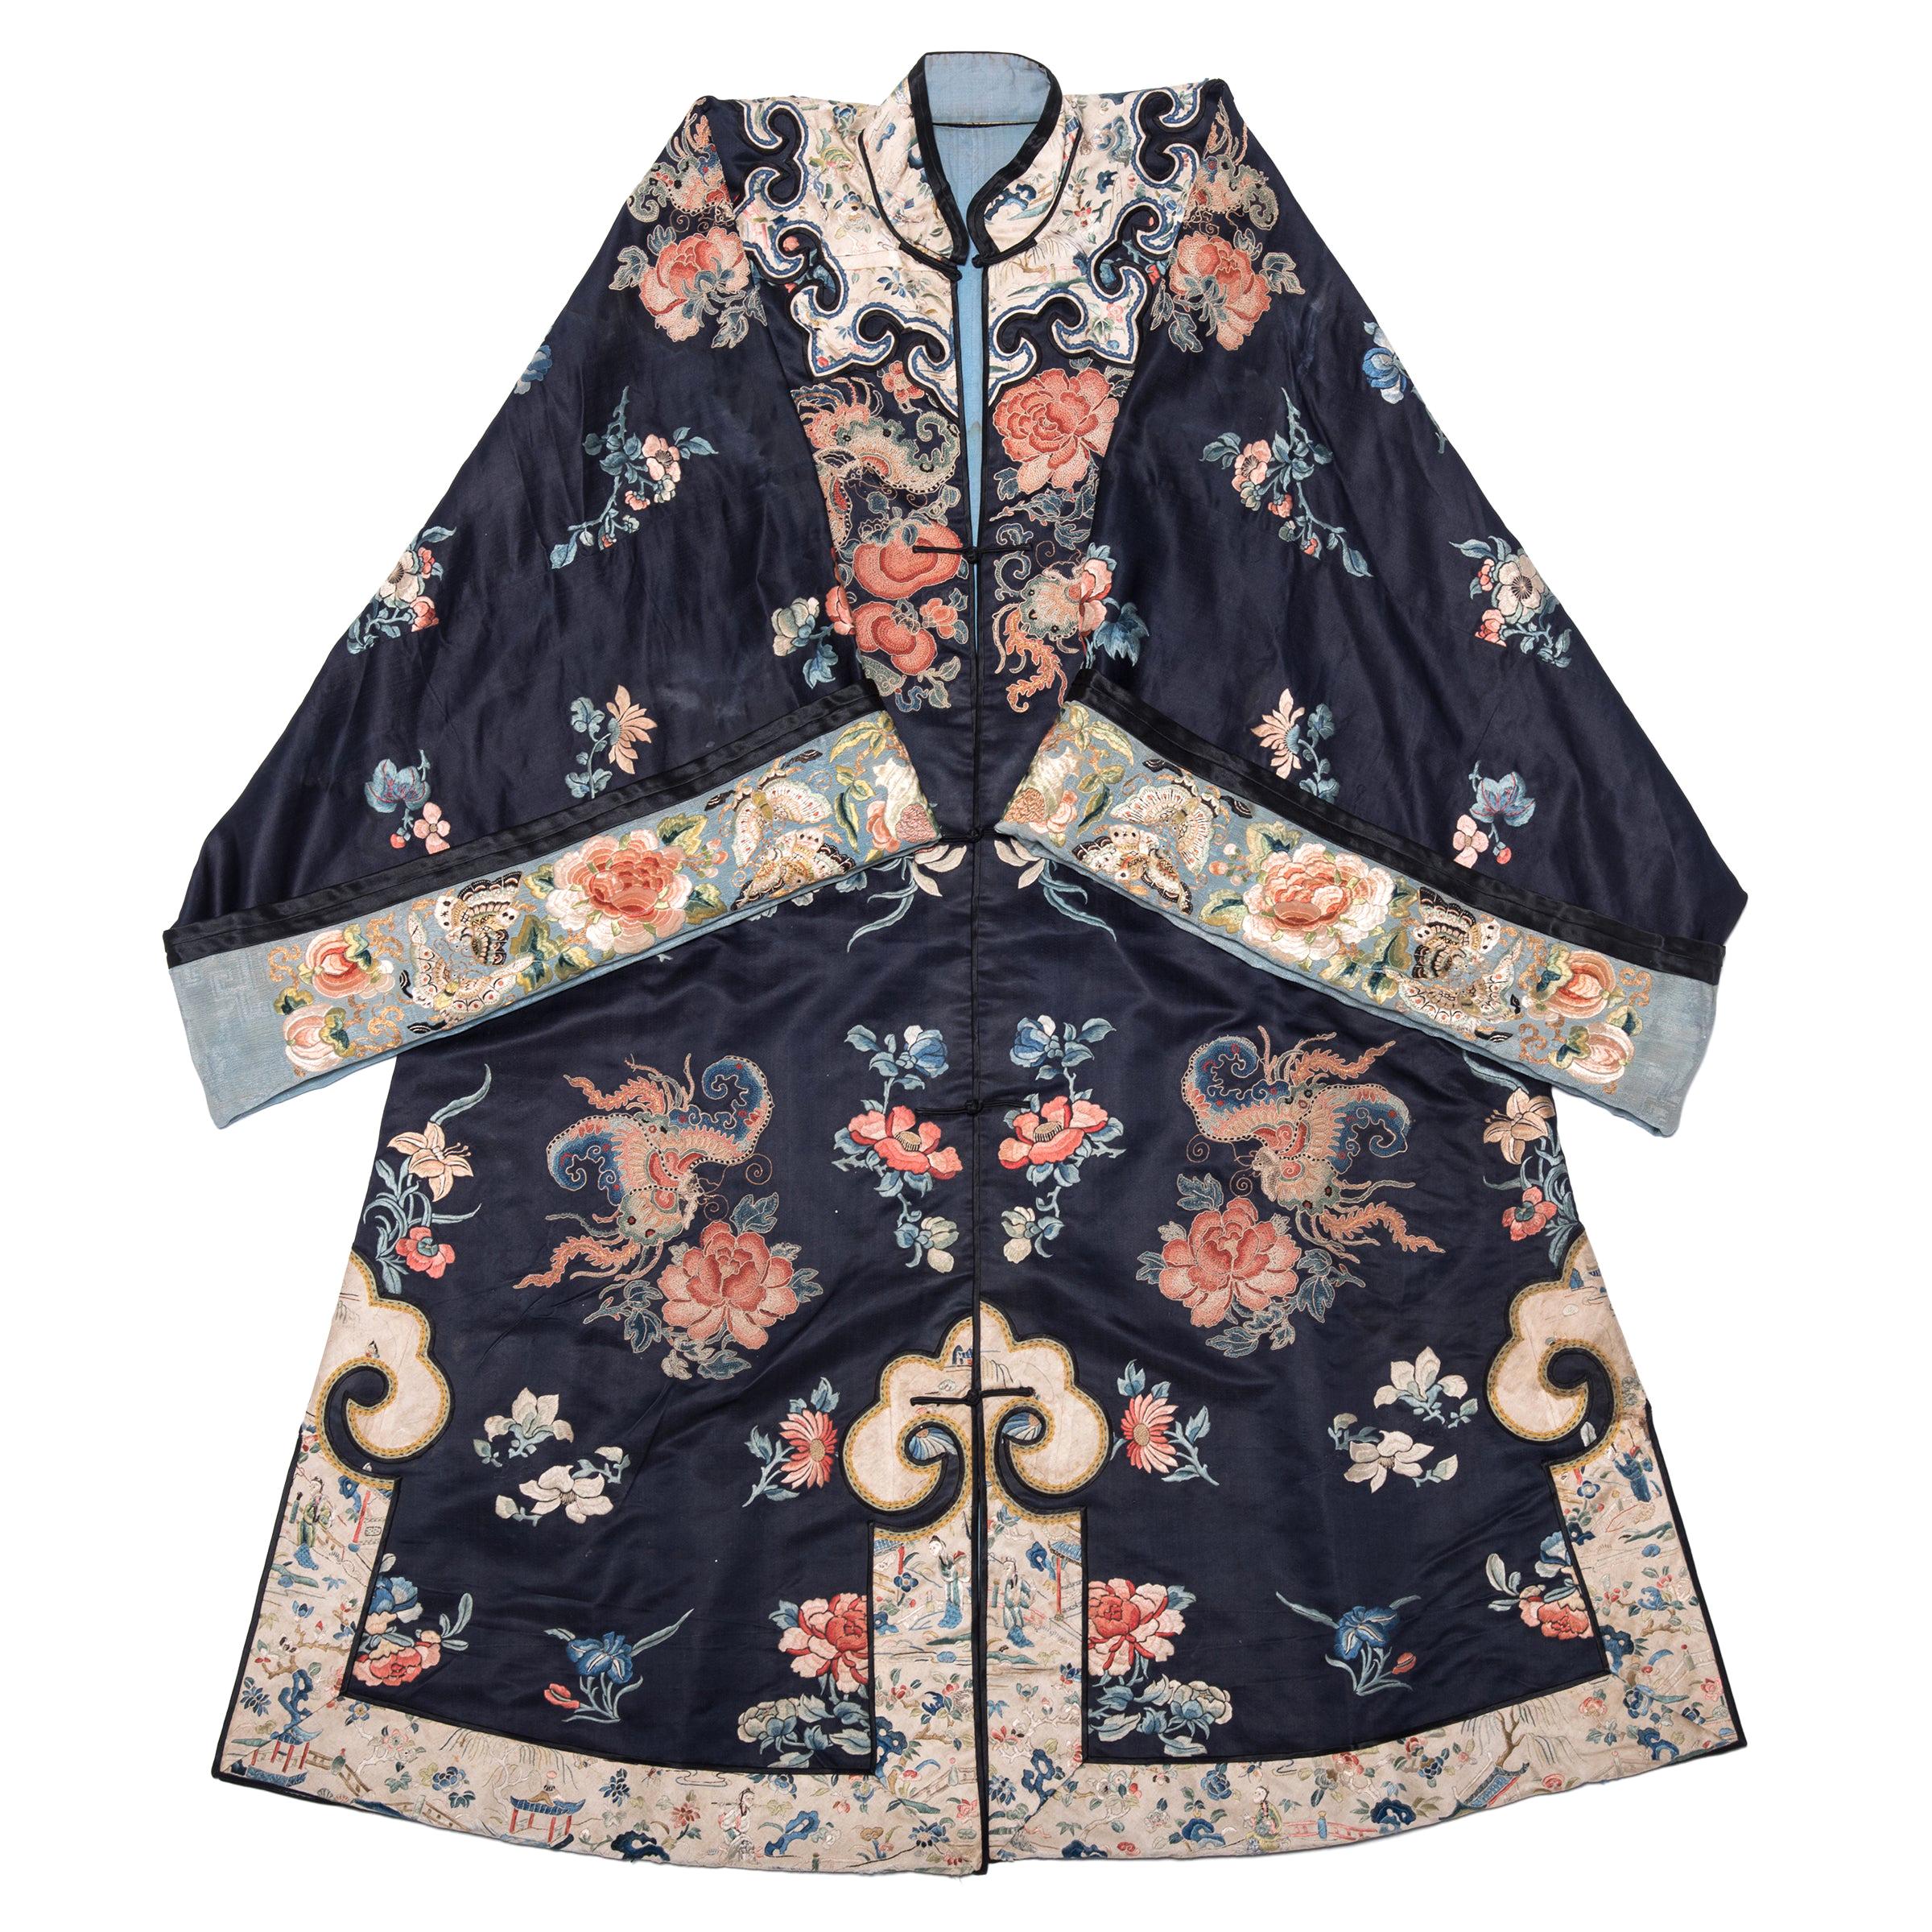 Robe courte chinoise en soie brodée de papillons pour femmes du 19ème siècle